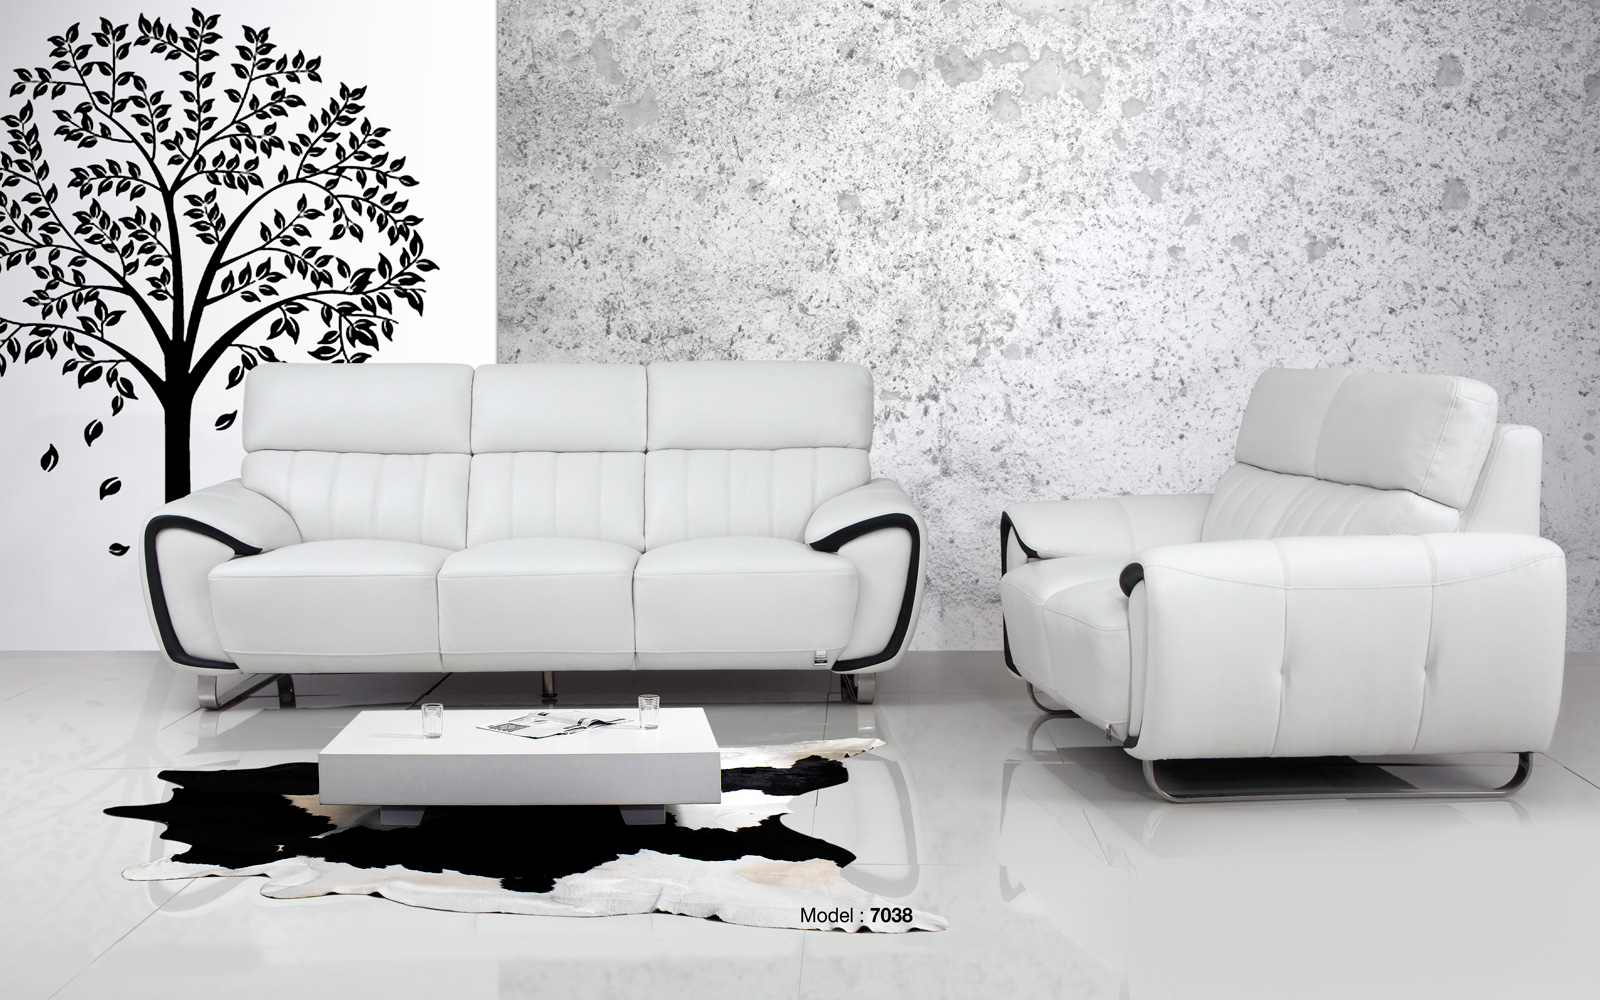 Ghế sofa mang phong cách hiện đại